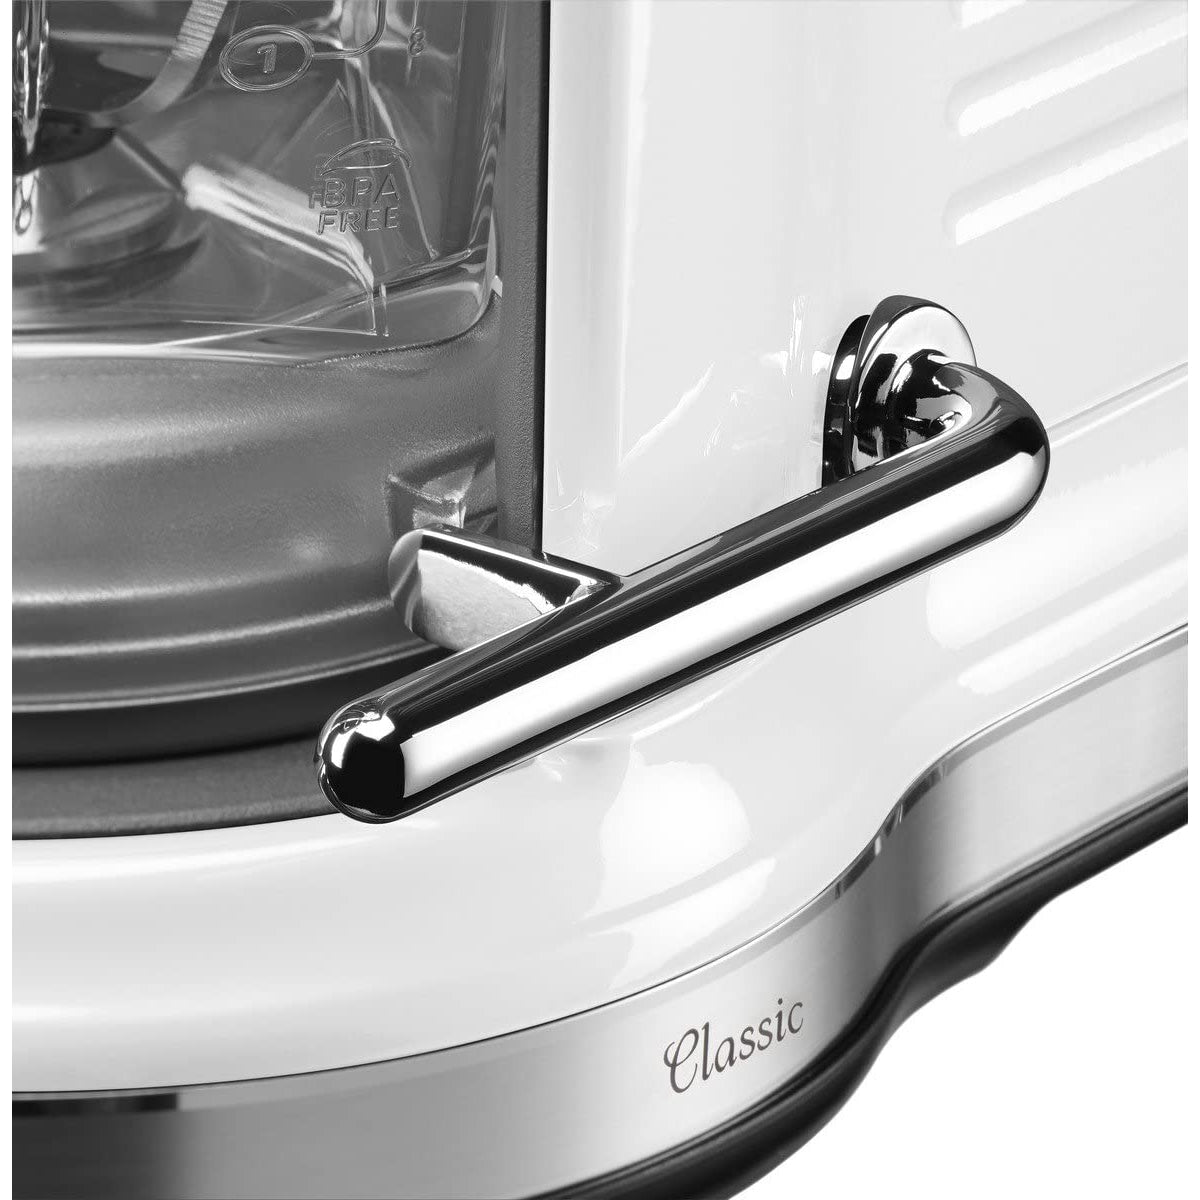 KitchenAid 5KSB5080 Classic Magnetic Drive Blender - White